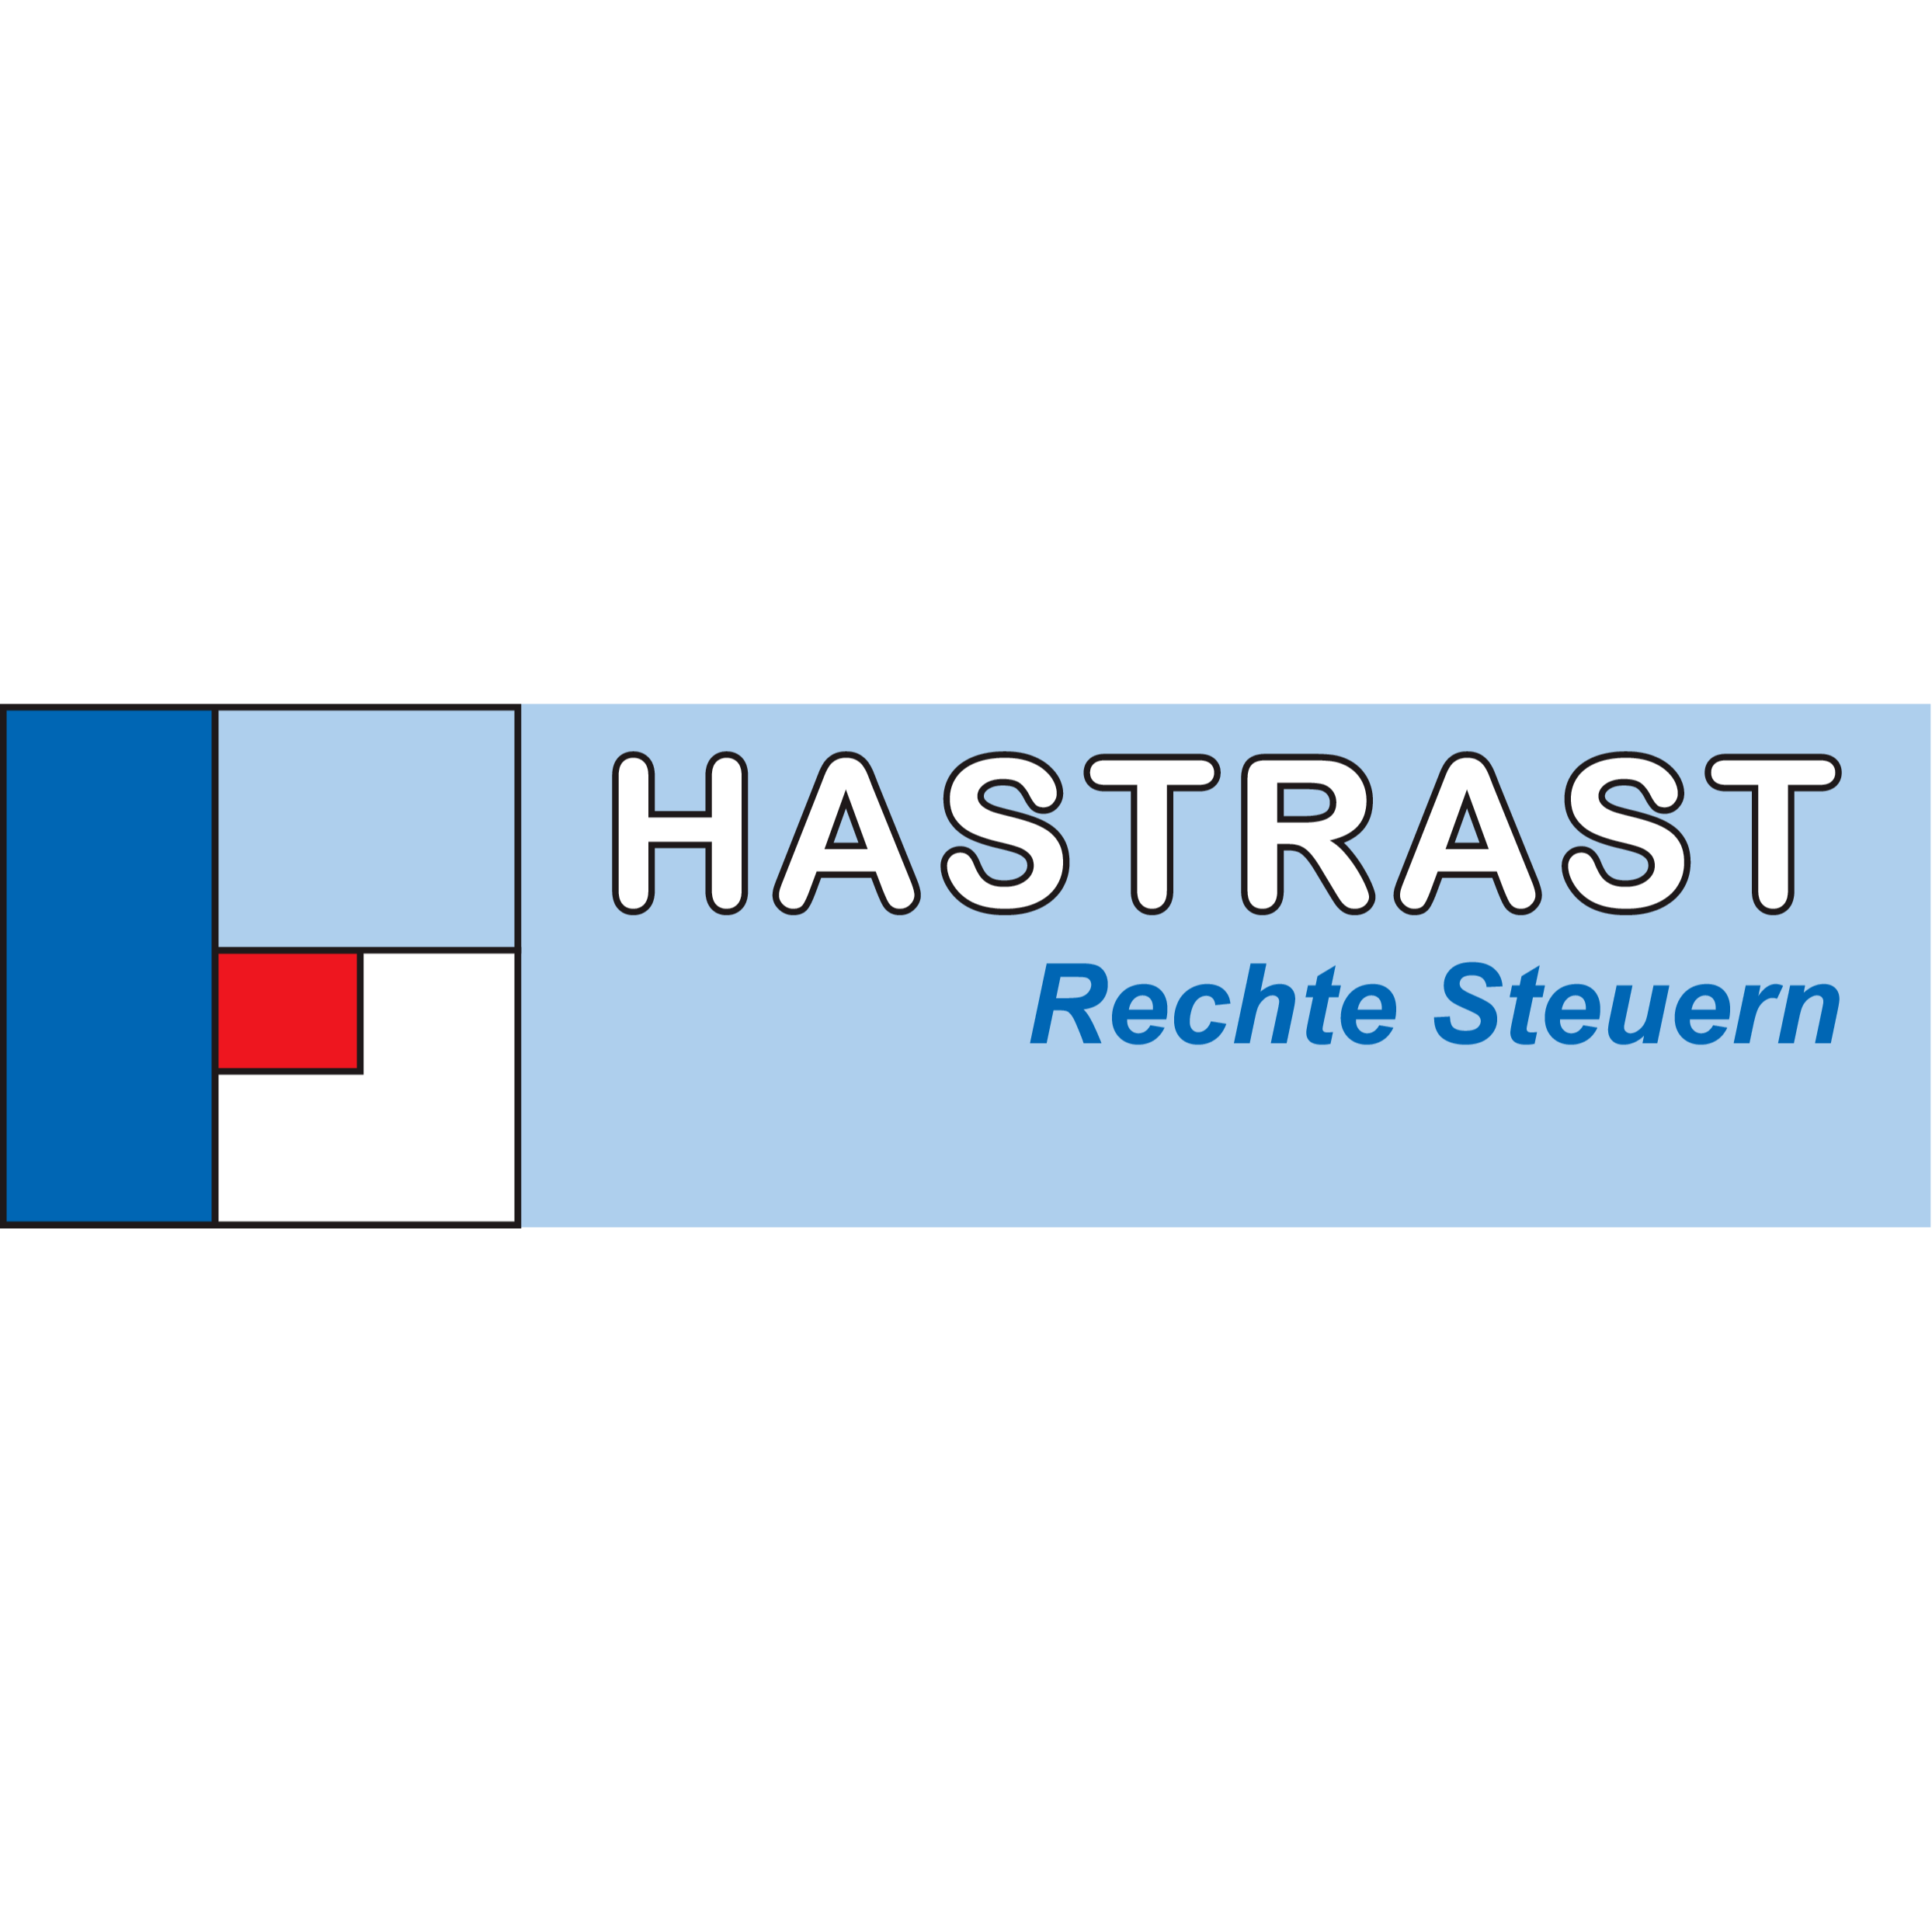 HASTRAST - Rechte Steuern Logo